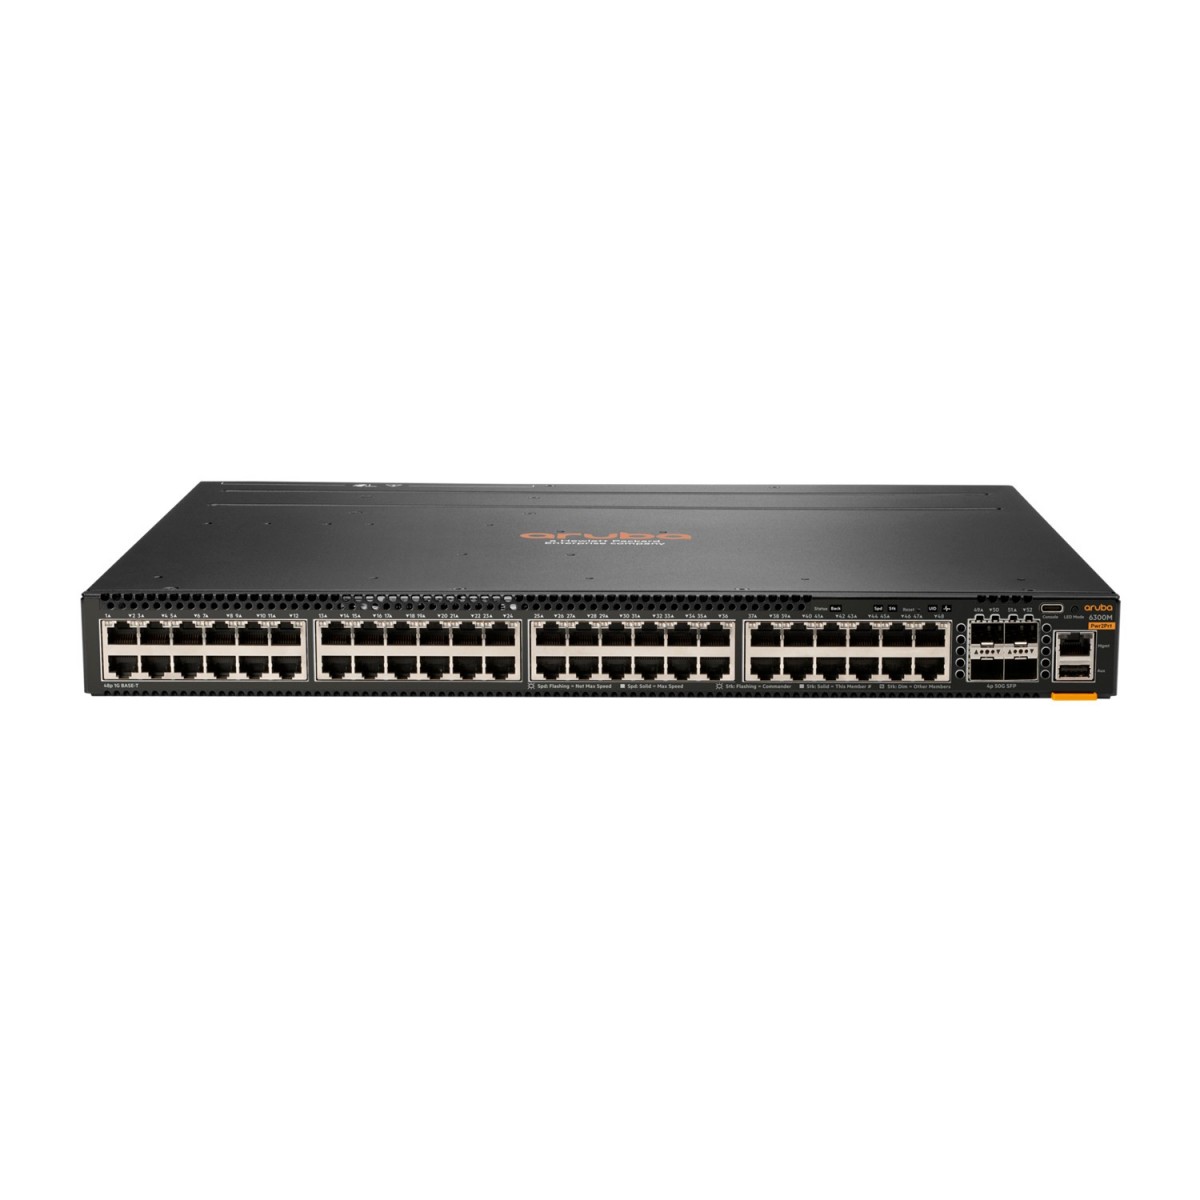 HPE 6300M - Managed - L3 - Gigabit Ethernet (10/100/1000) - Power over Ethernet (PoE) - Rack mounting - 1U